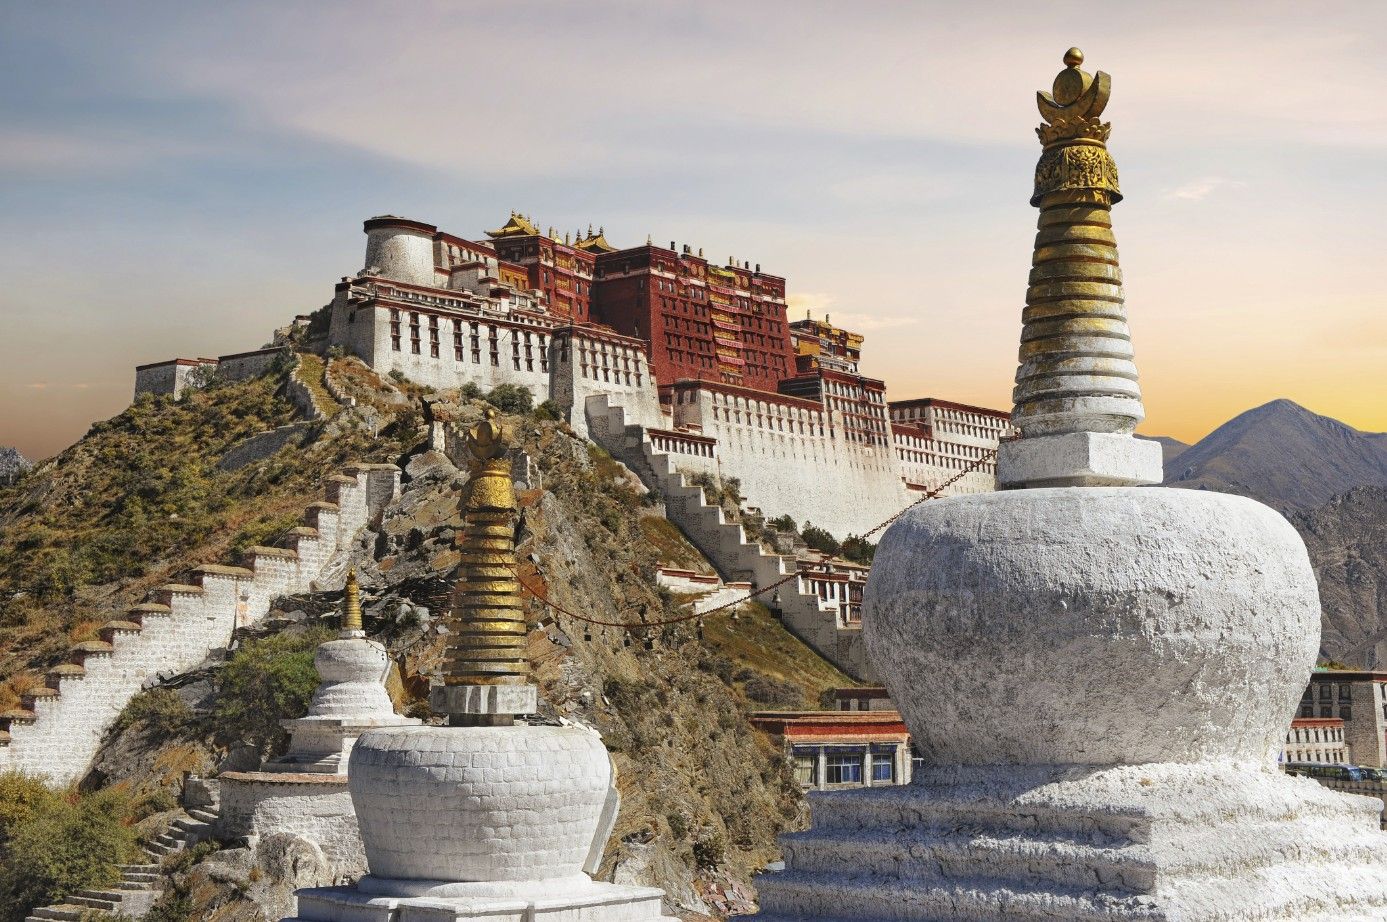 Le palais du Potala à Lhassa, Tibet - Chine © Thinkstock